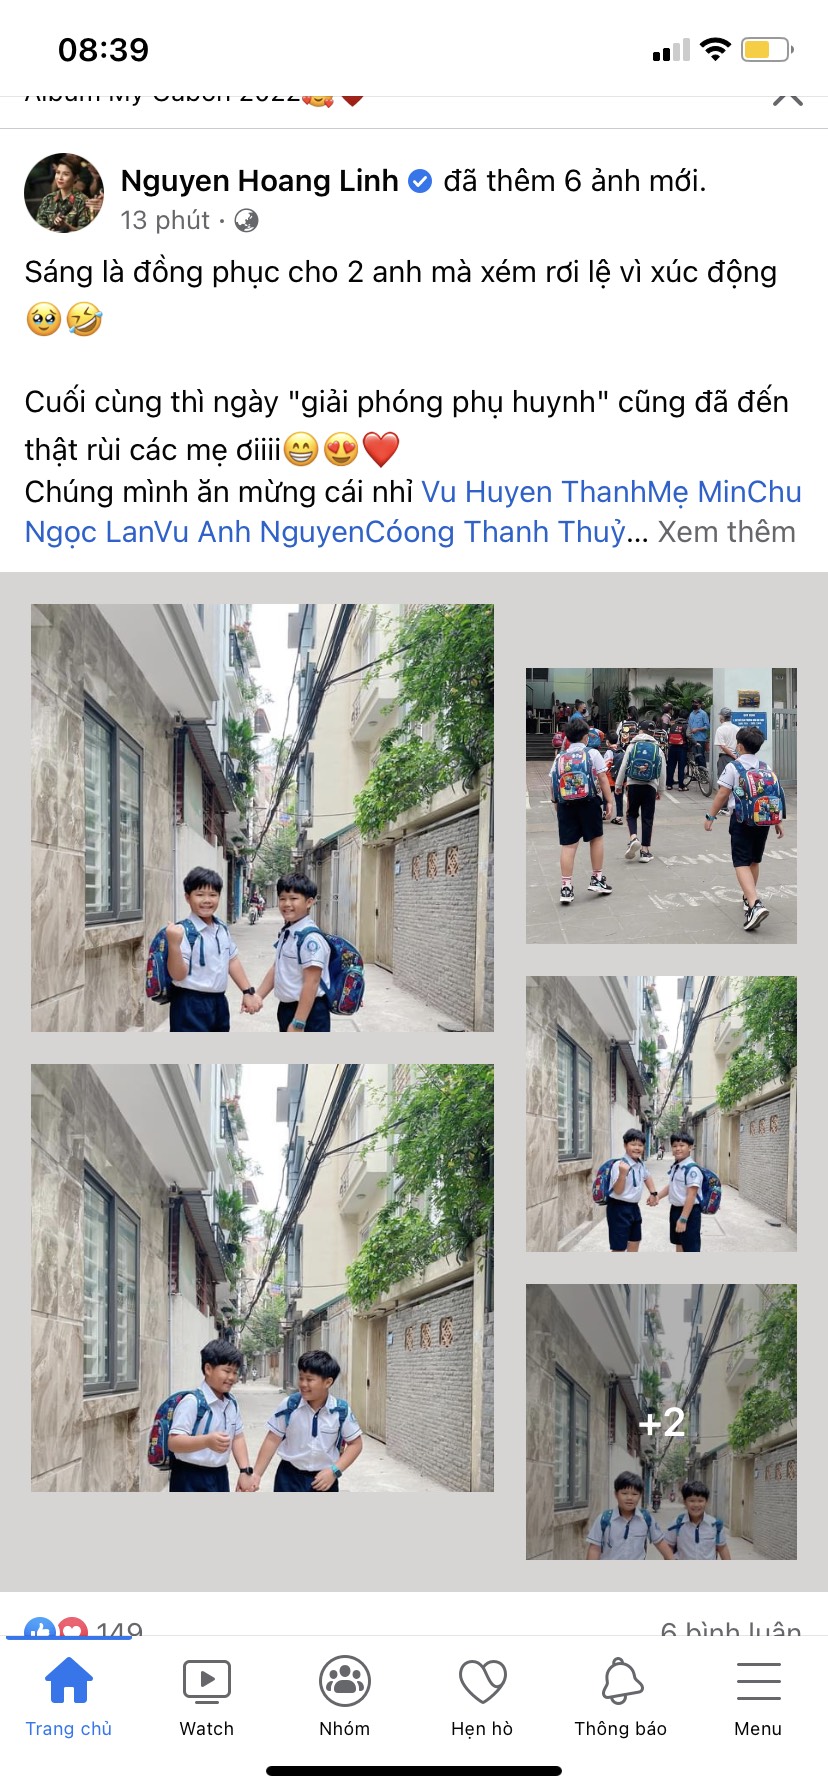 Dàn sao Việt phấn khởi khoe ảnh con đi học lại nhân ngày 'giải phóng phụ huynh' - Ảnh 3